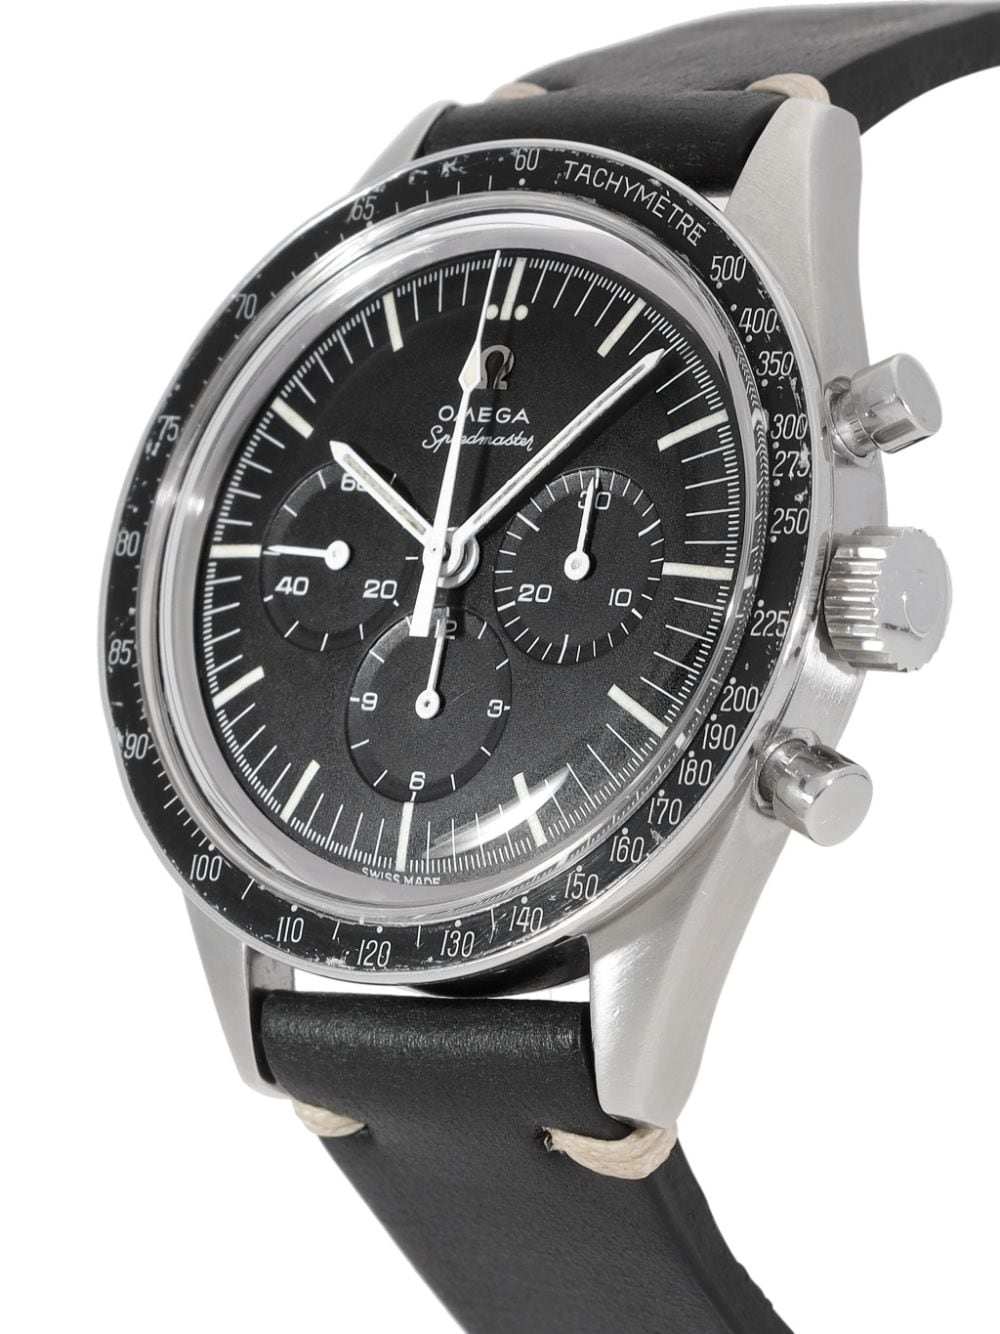 OMEGA 1963 pre-owned Speedmaster horloge - Zwart